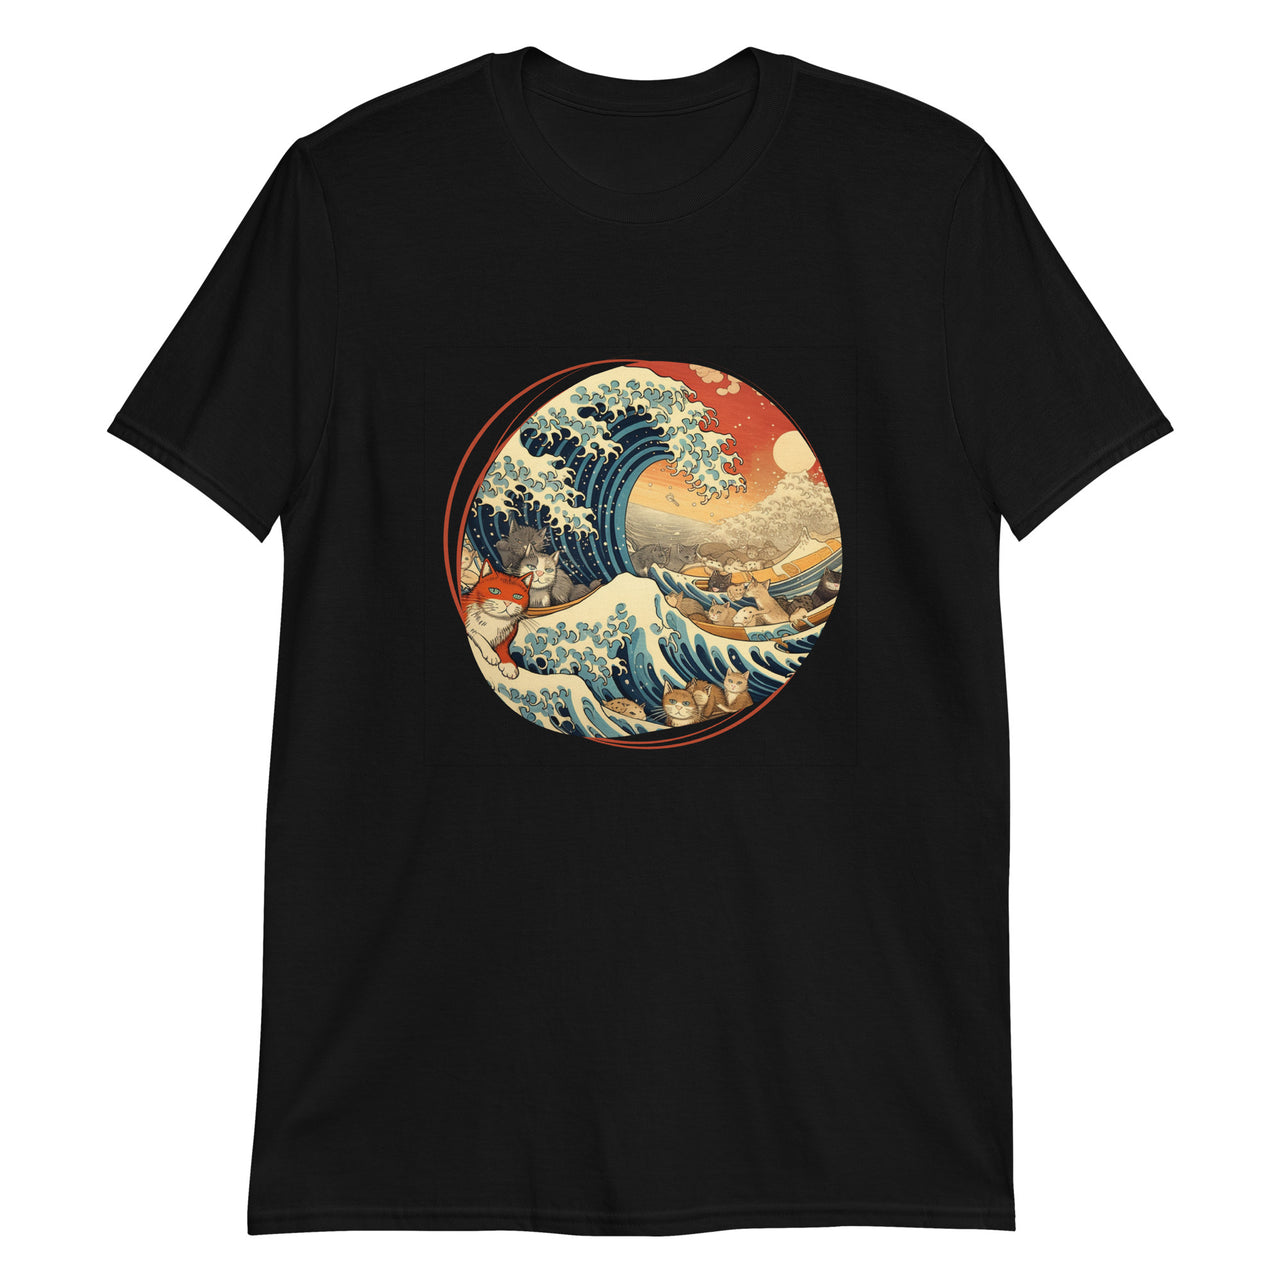 Ukiyo-e Cats Riding the Great Wave T-Shirt